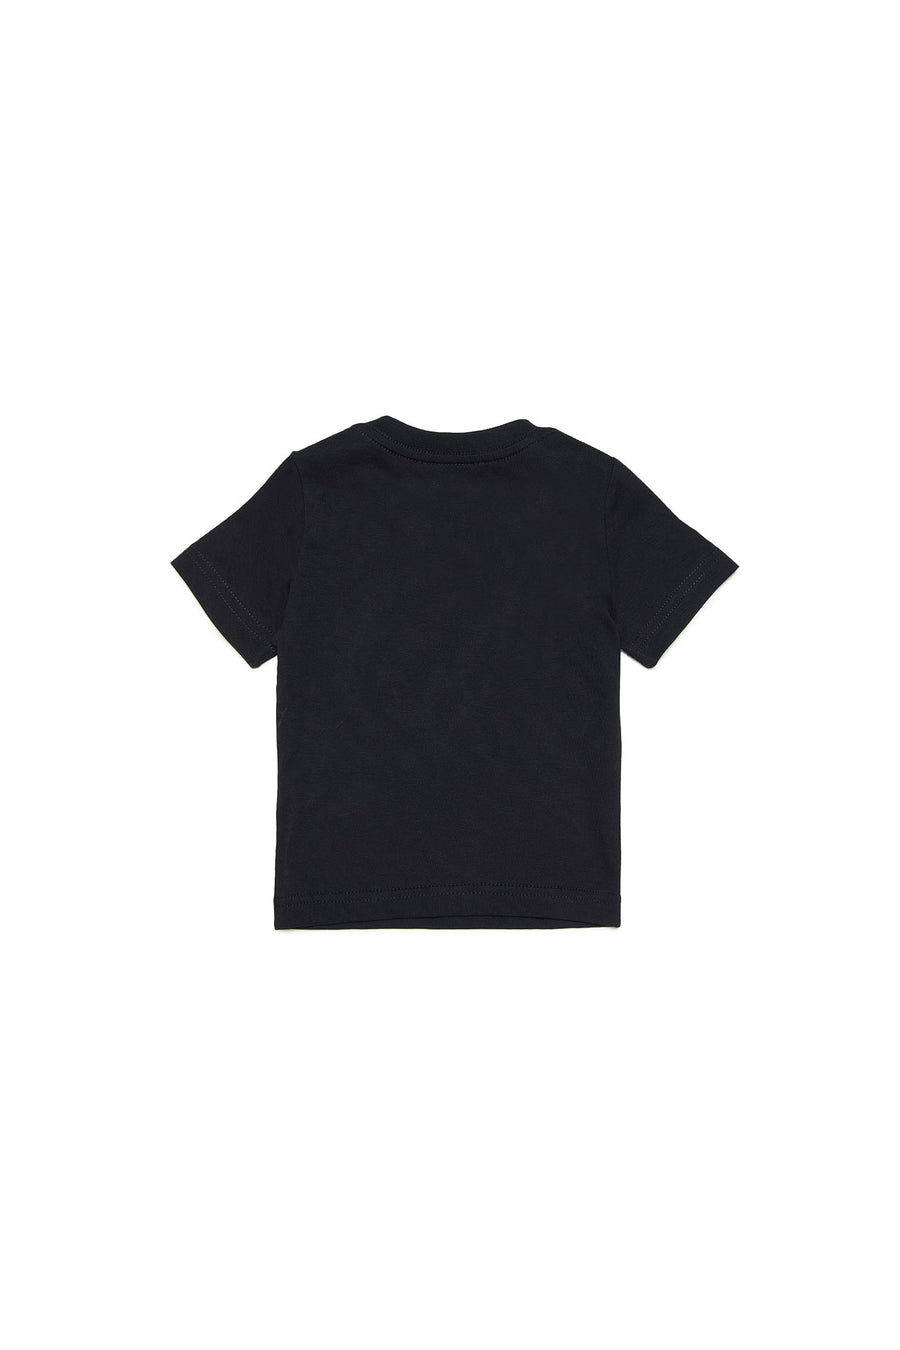 T-shirt nera con maxi stampa foglia